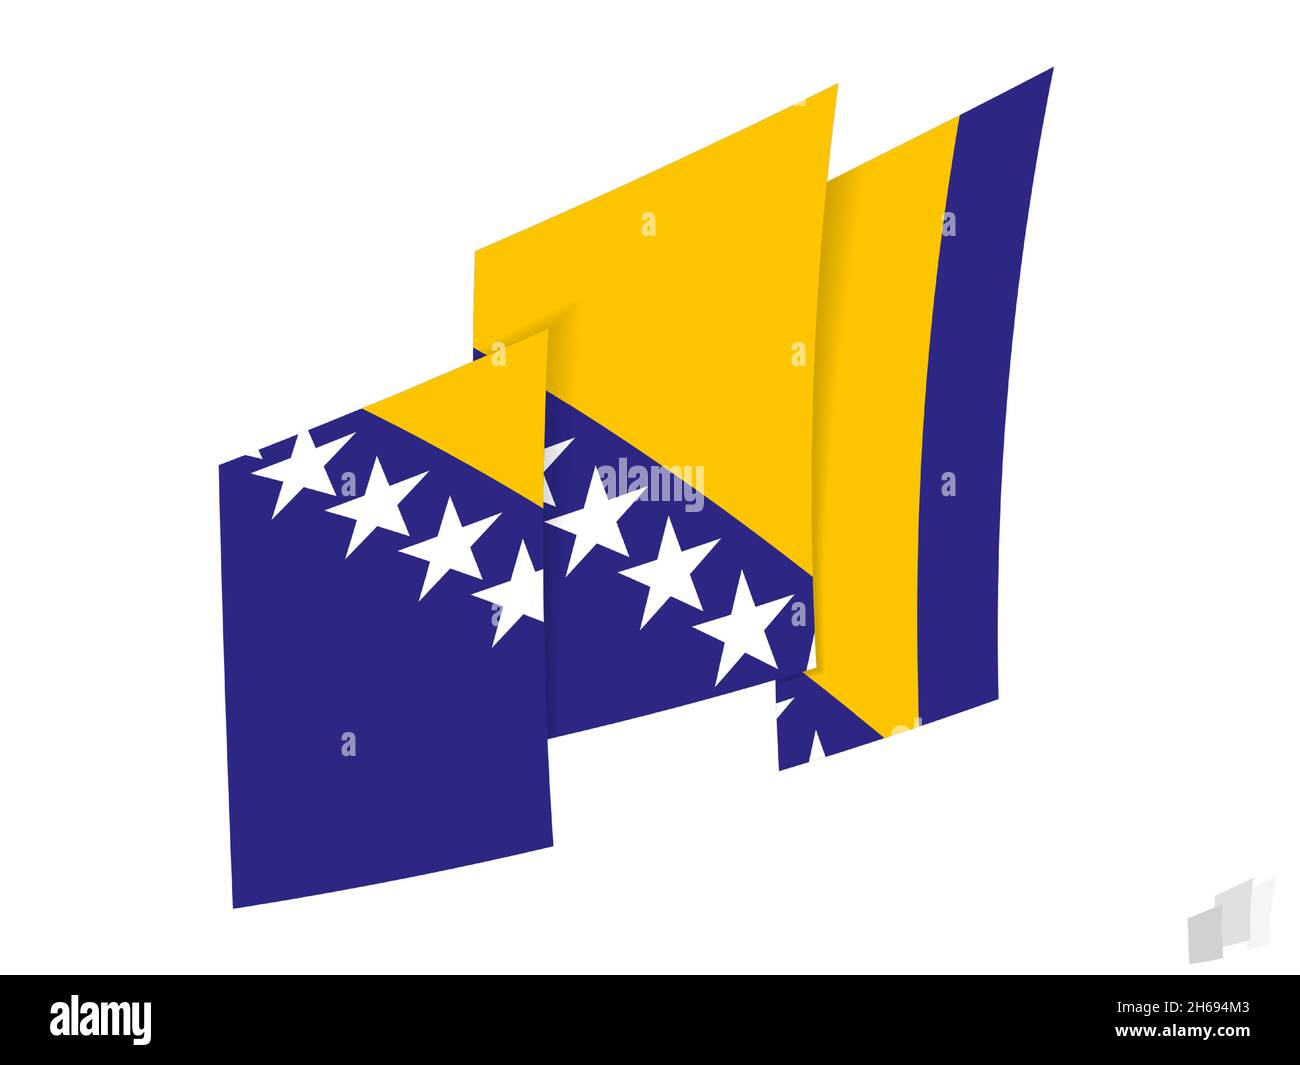 Bosnien und Herzegowina Flagge in einem abstrakten zerrissenen Design.  Modernes Design der Flagge von Bosnien und Herzegowina. Vektorsymbol  Stock-Vektorgrafik - Alamy